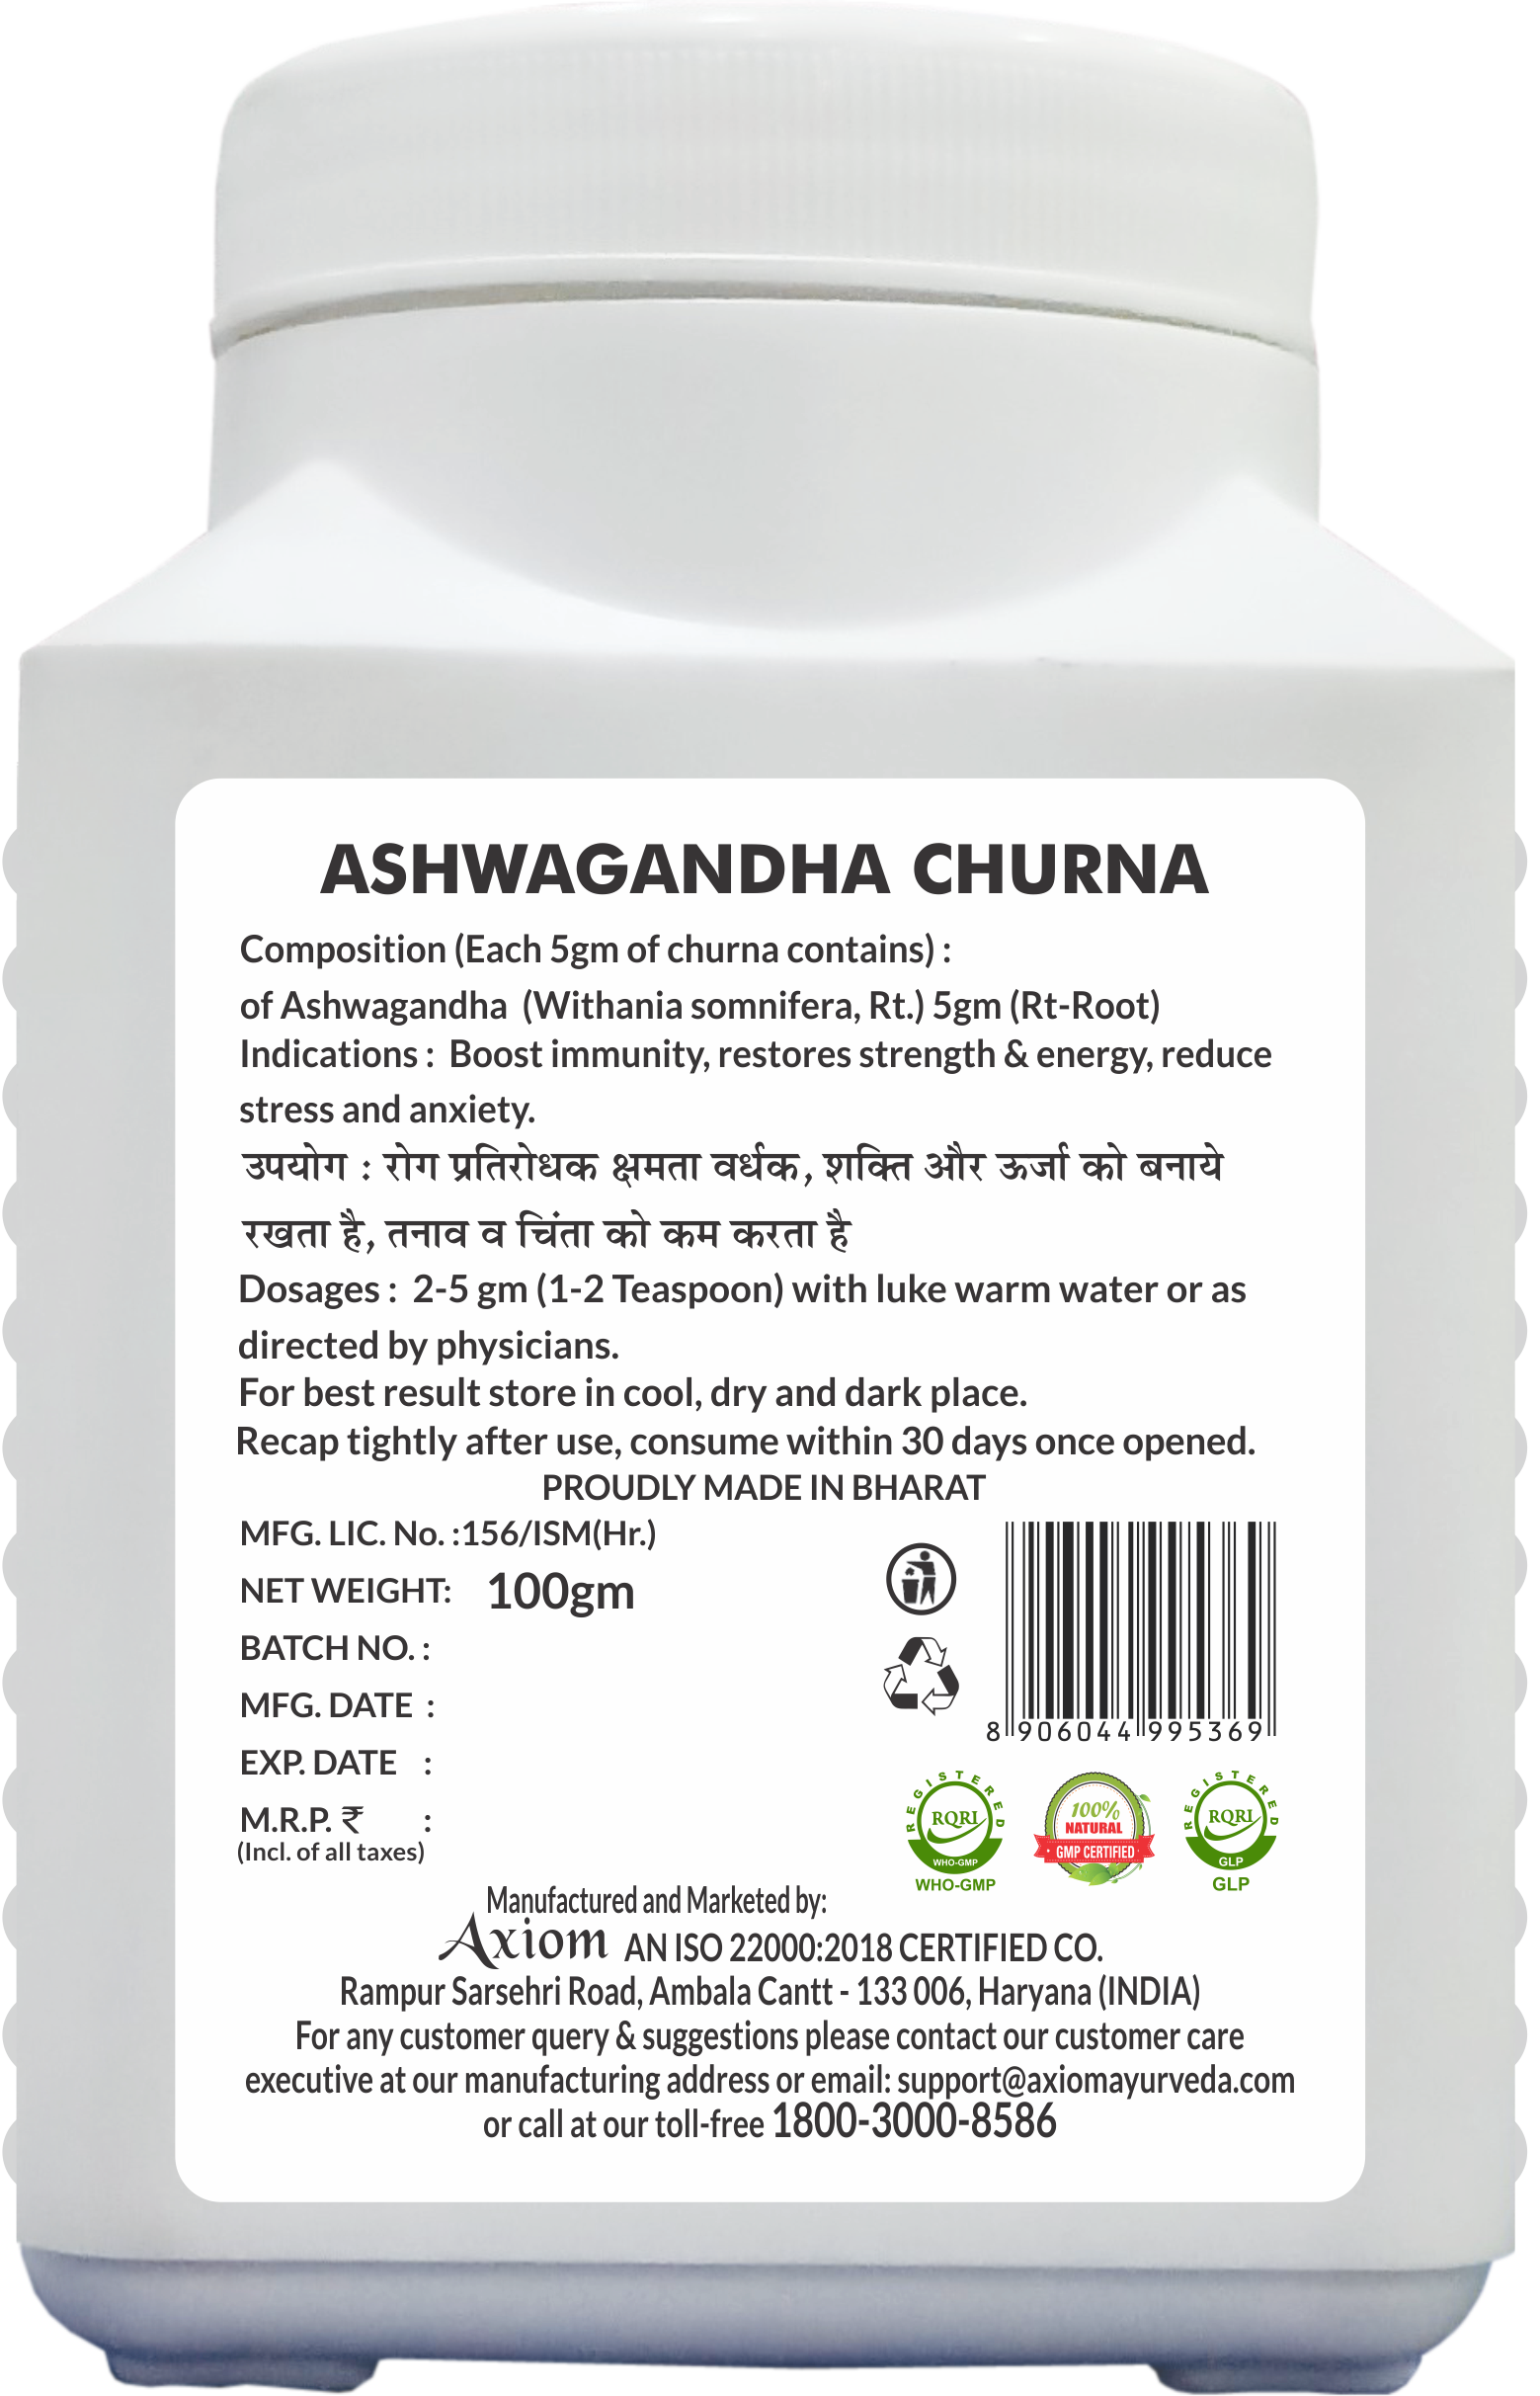 Ashwagandha churan Helps in reducing stress and anxiety